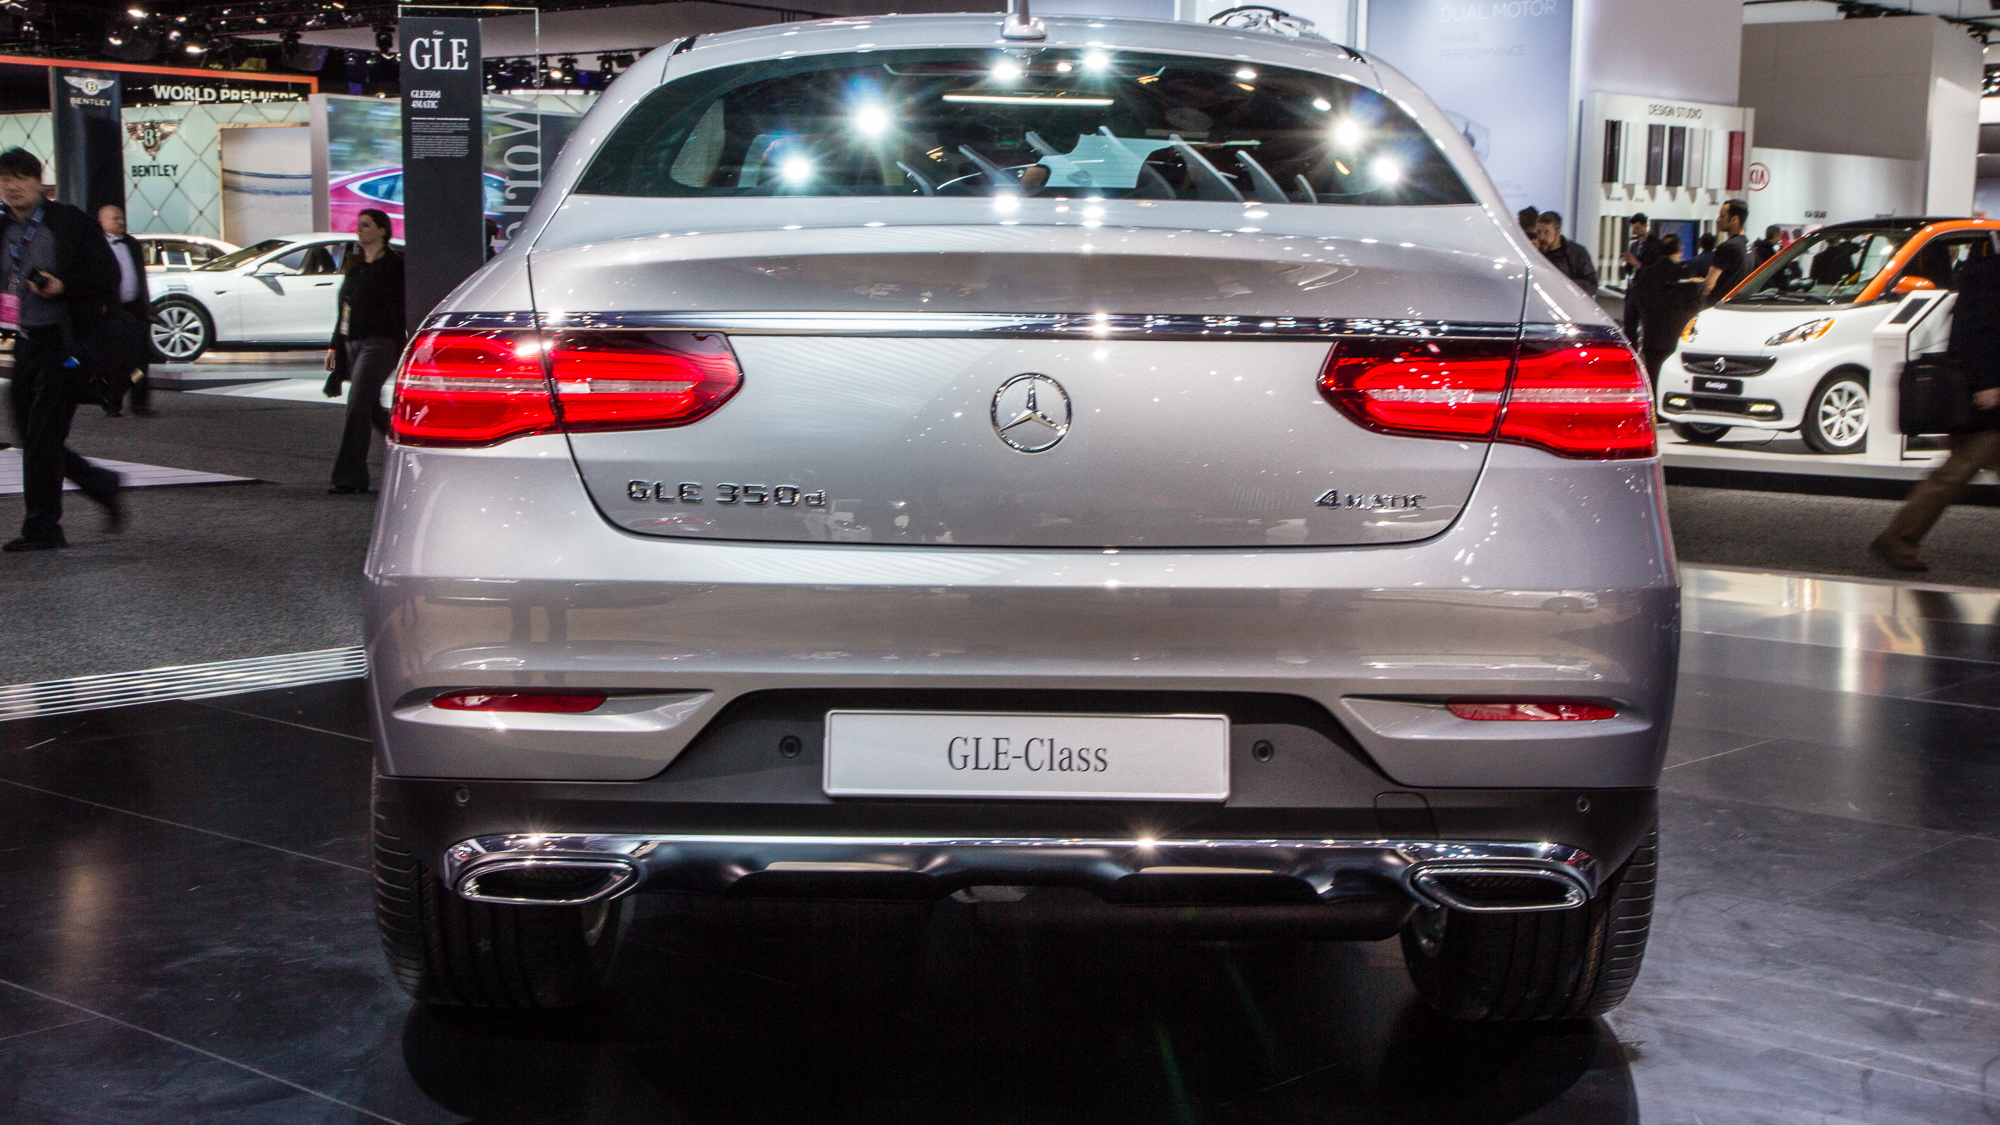 2016 Mercedes-Benz GLE Coupe live photos, 2015 Detroit Auto Show